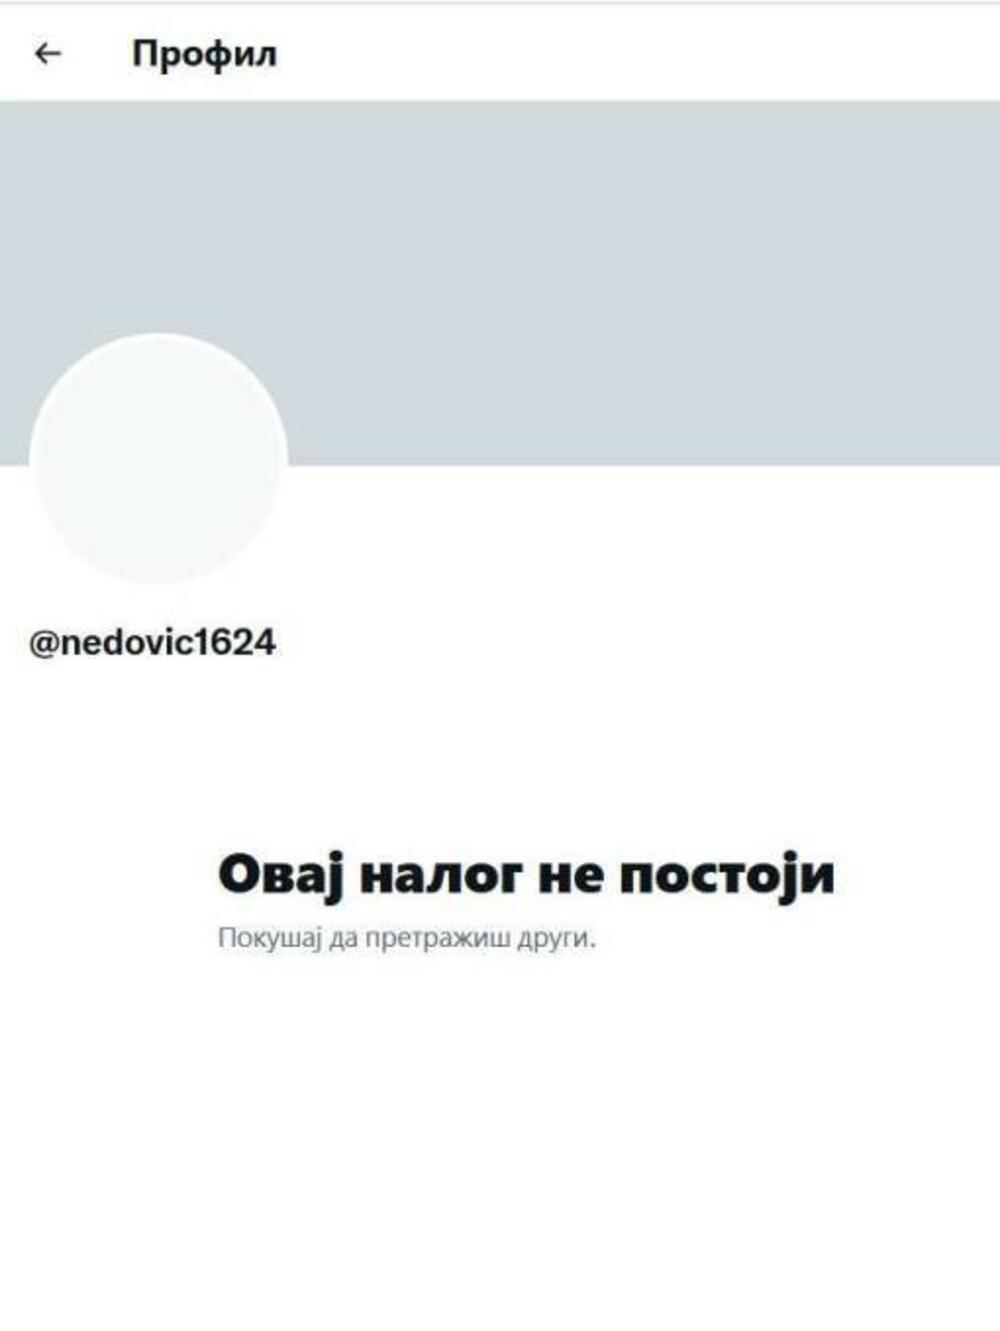 Ugašen Tviter nalog Nedovića